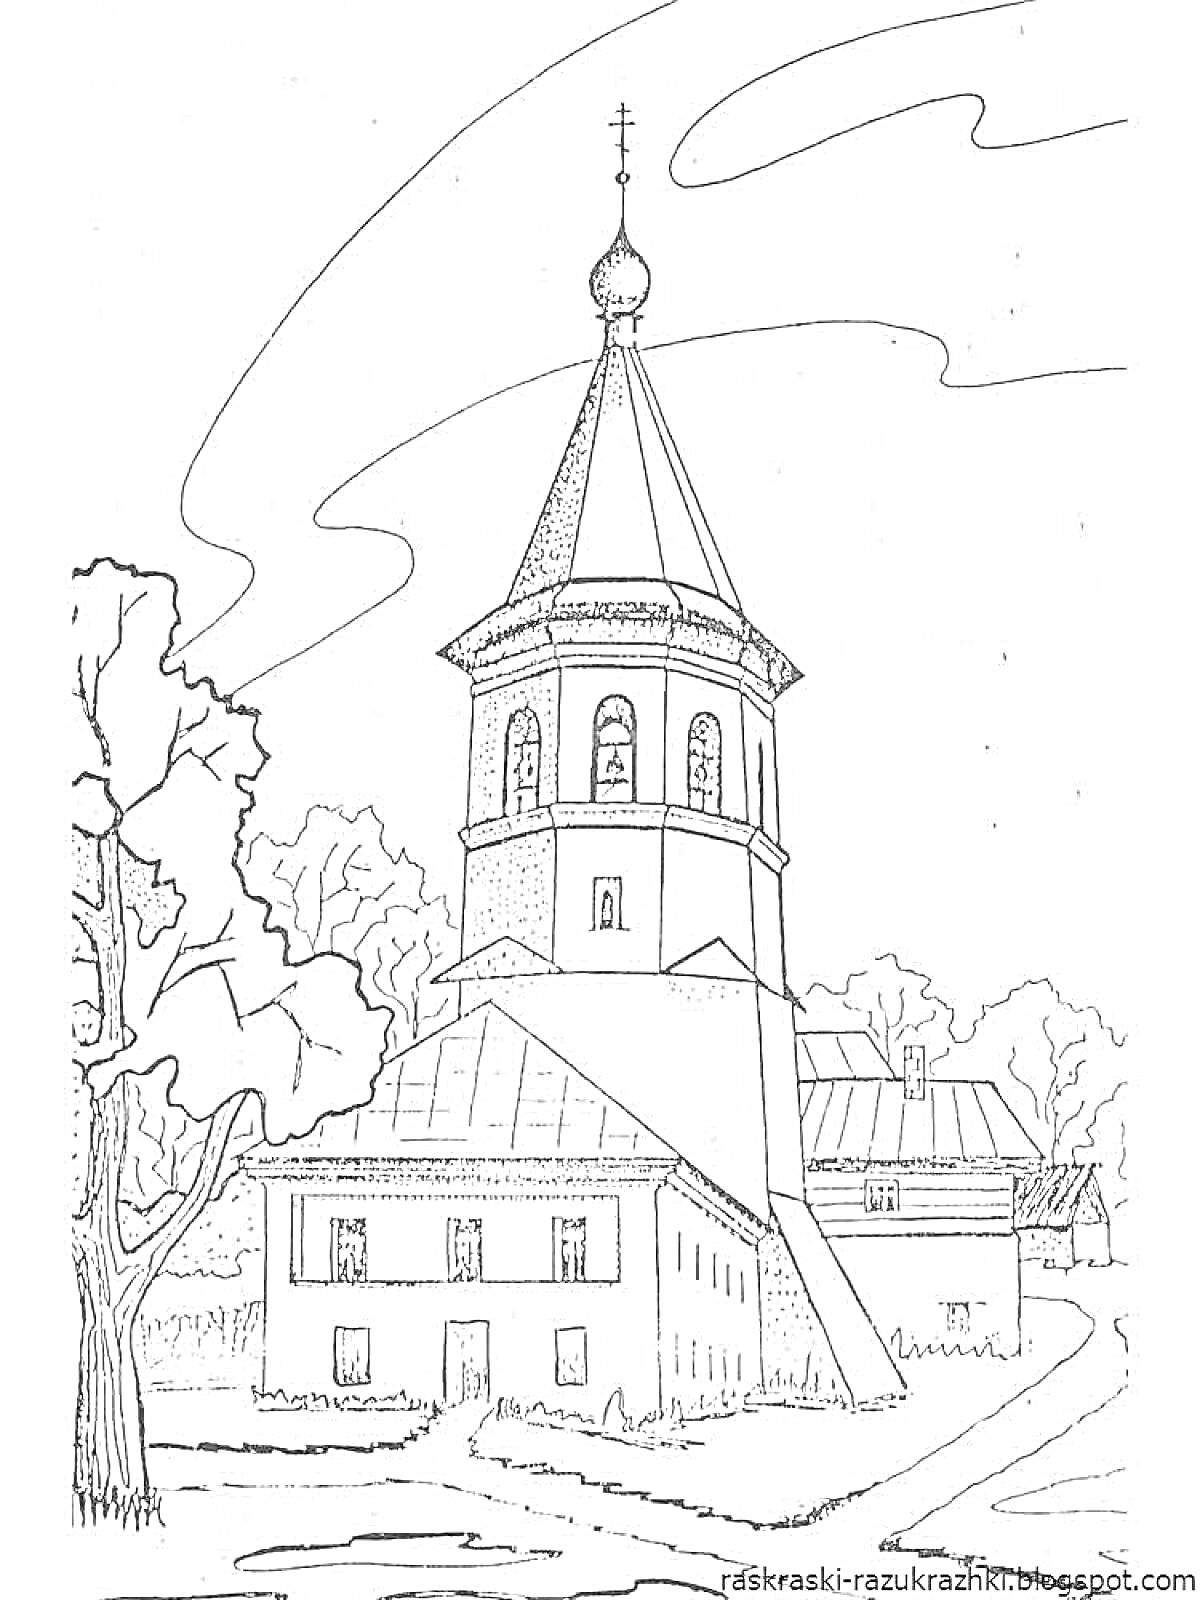 Раскраска Храм с колокольней, деревьями и дорожкой на переднем фоне